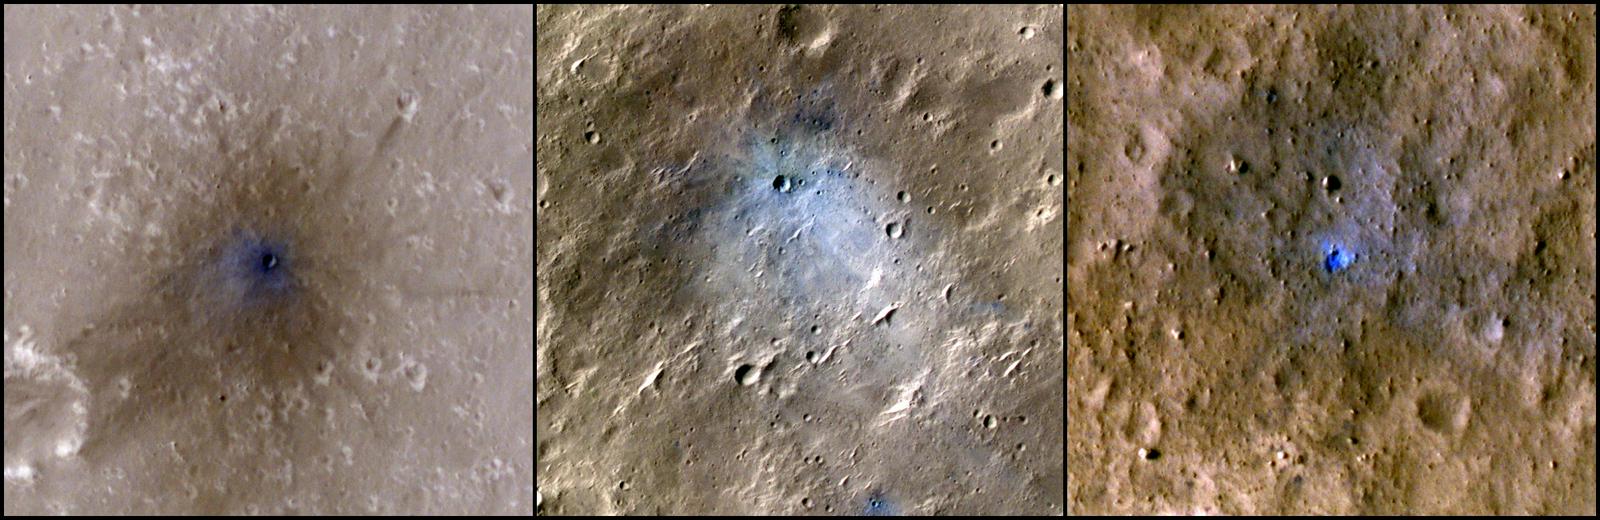 Kraterji treh meteoritov, katerih padec je slišala sonda InSight. Posnetki so delo sonde MRO. Foto: NASA/JPL-Caltech/University of Arizona